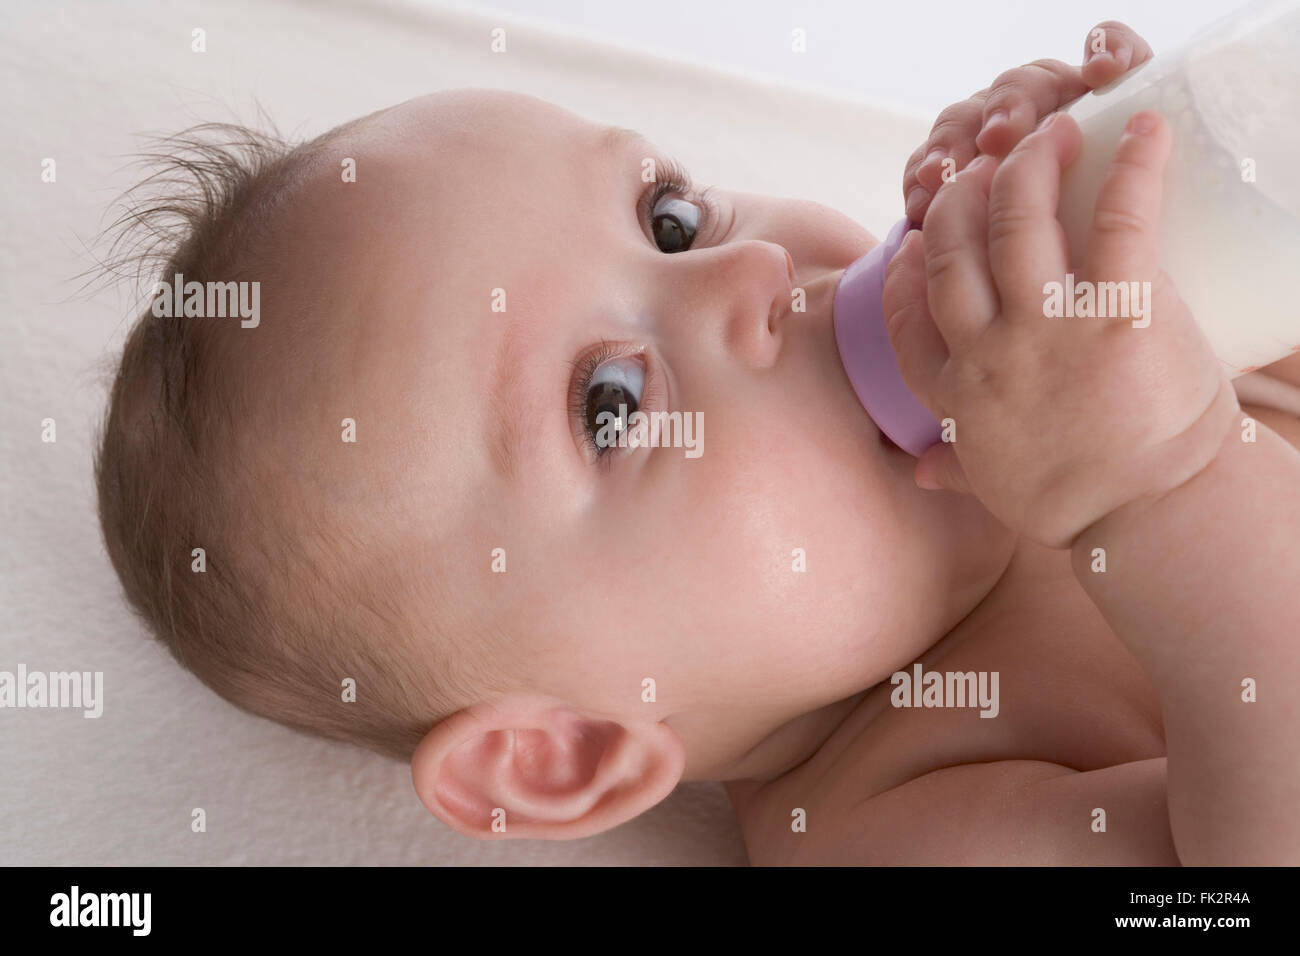 Babymädchen trinkt aus einer Babyflasche Stockfoto